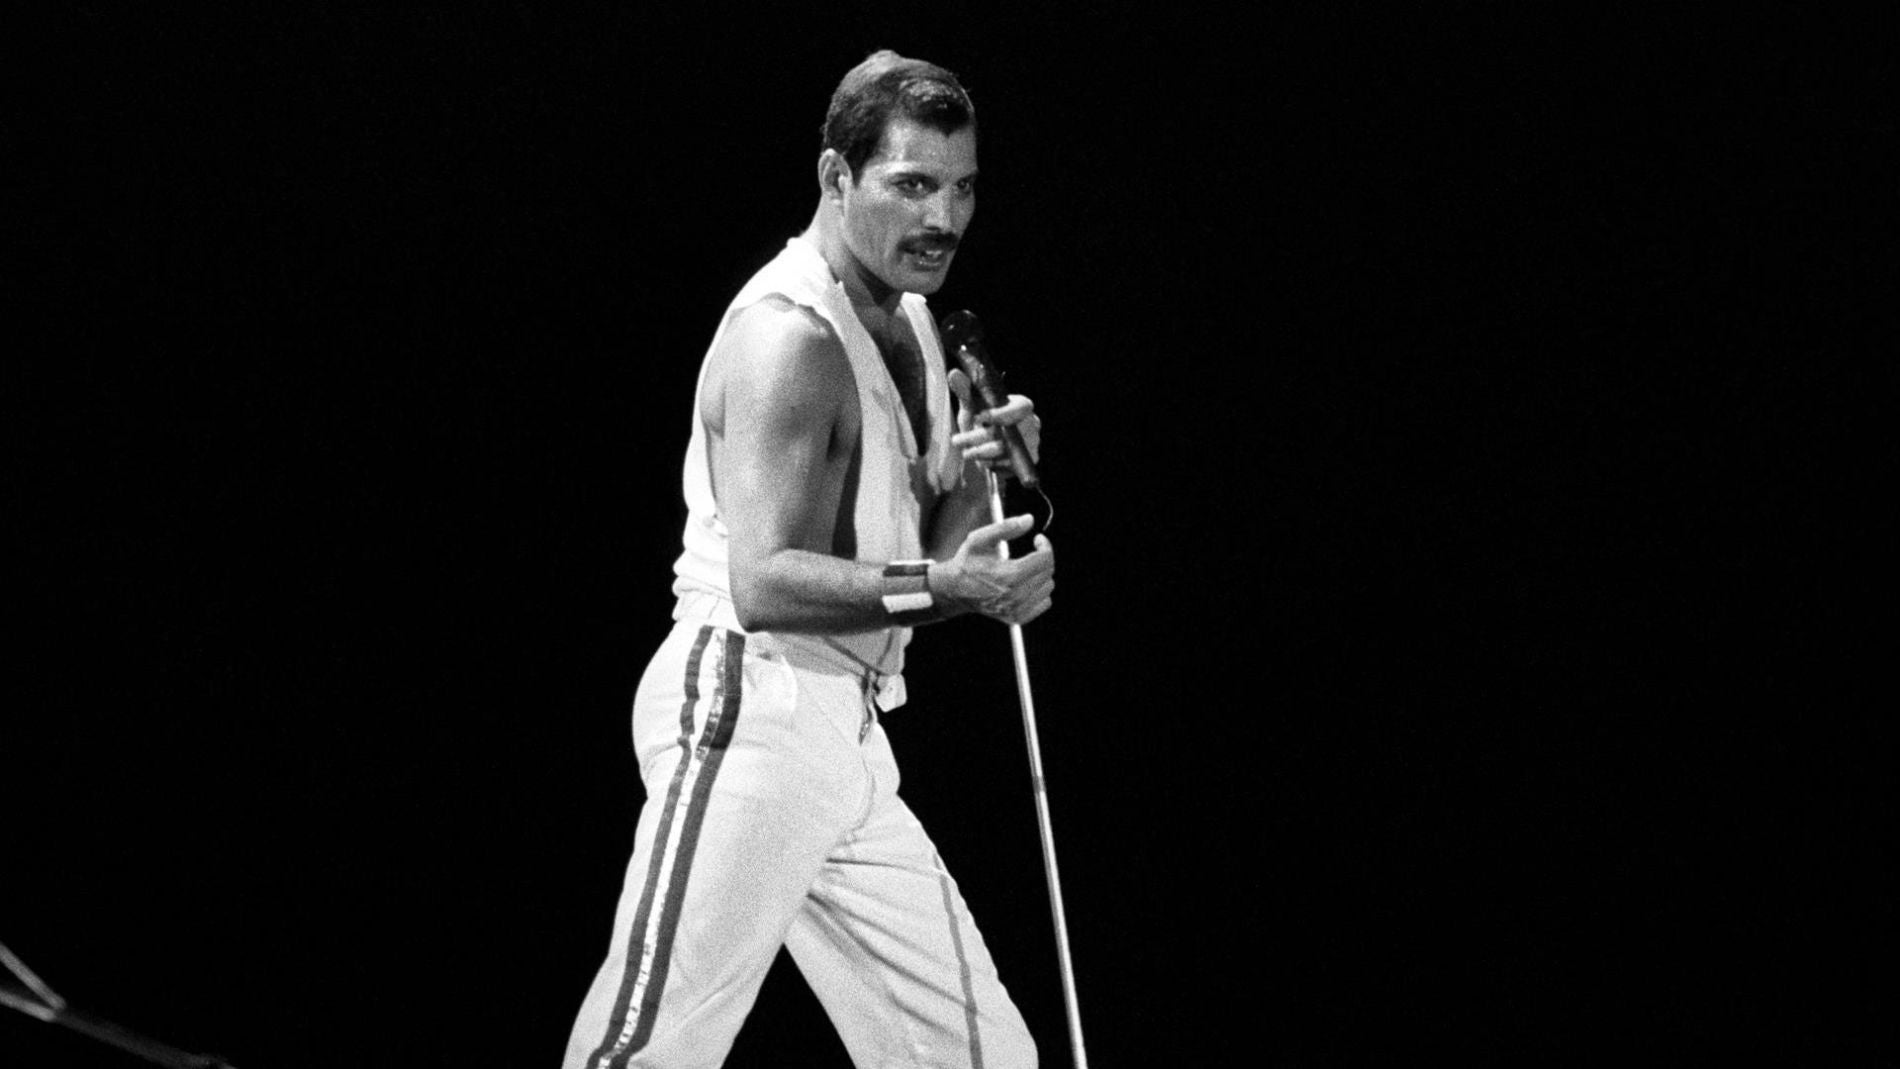 El cantante británico Freddie Mercury, líder del grupo musical "Queen", durante una actuación en una imagen de archivo